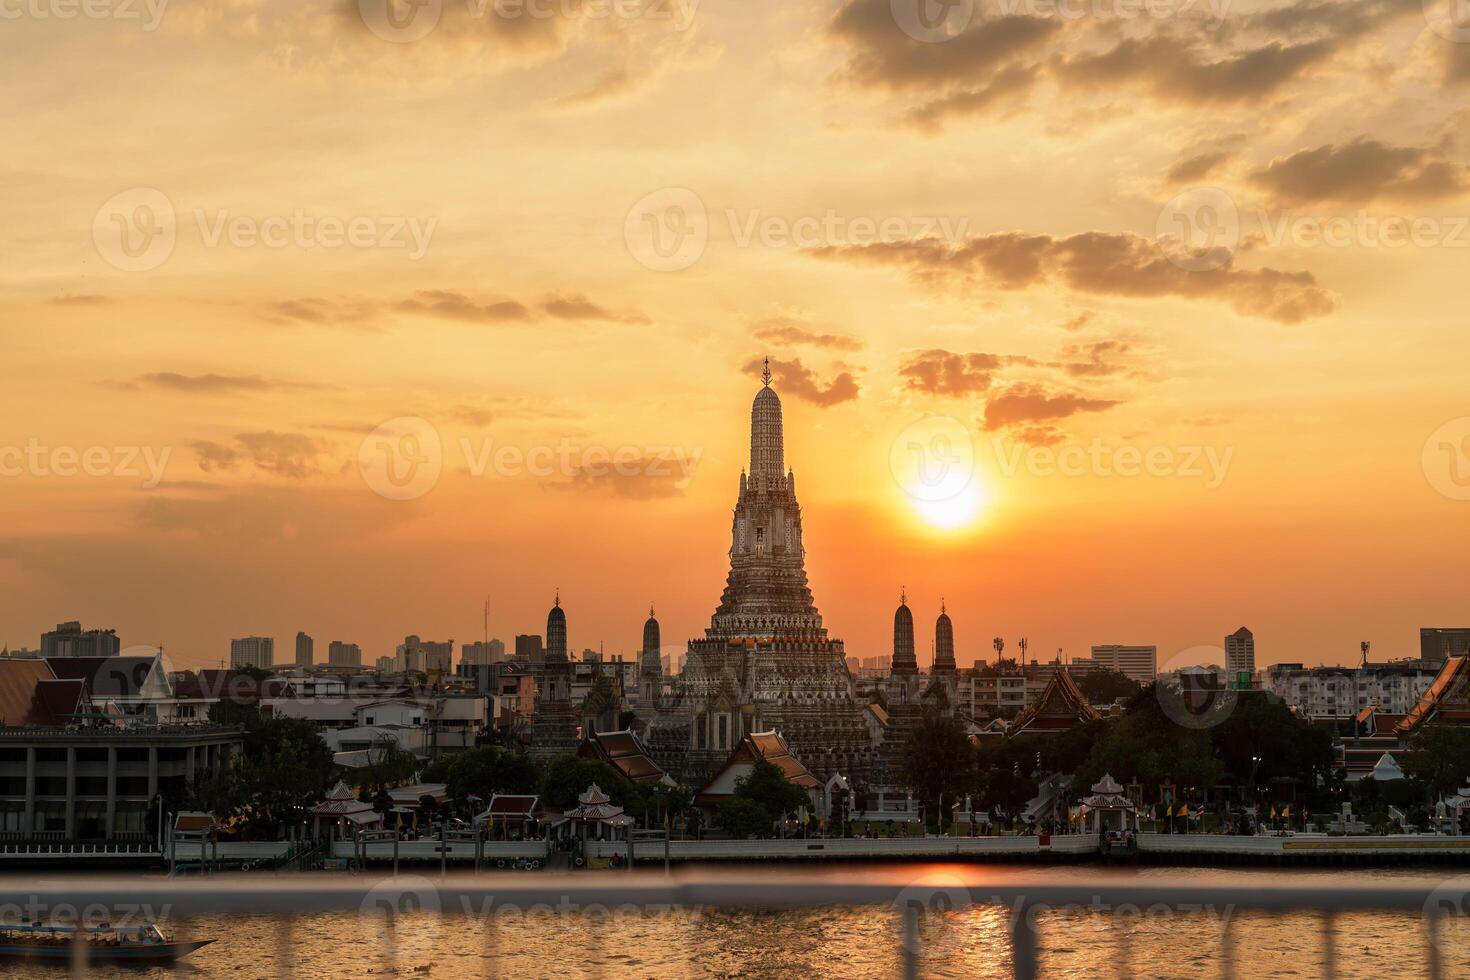 wat arun tempel in zonsondergang, tempel van dageraad in de buurt chao phraya rivier. mijlpaal en populair voor toerist attractie en reizen bestemming in Bangkok, Thailand en zuidoosten Azië concept foto